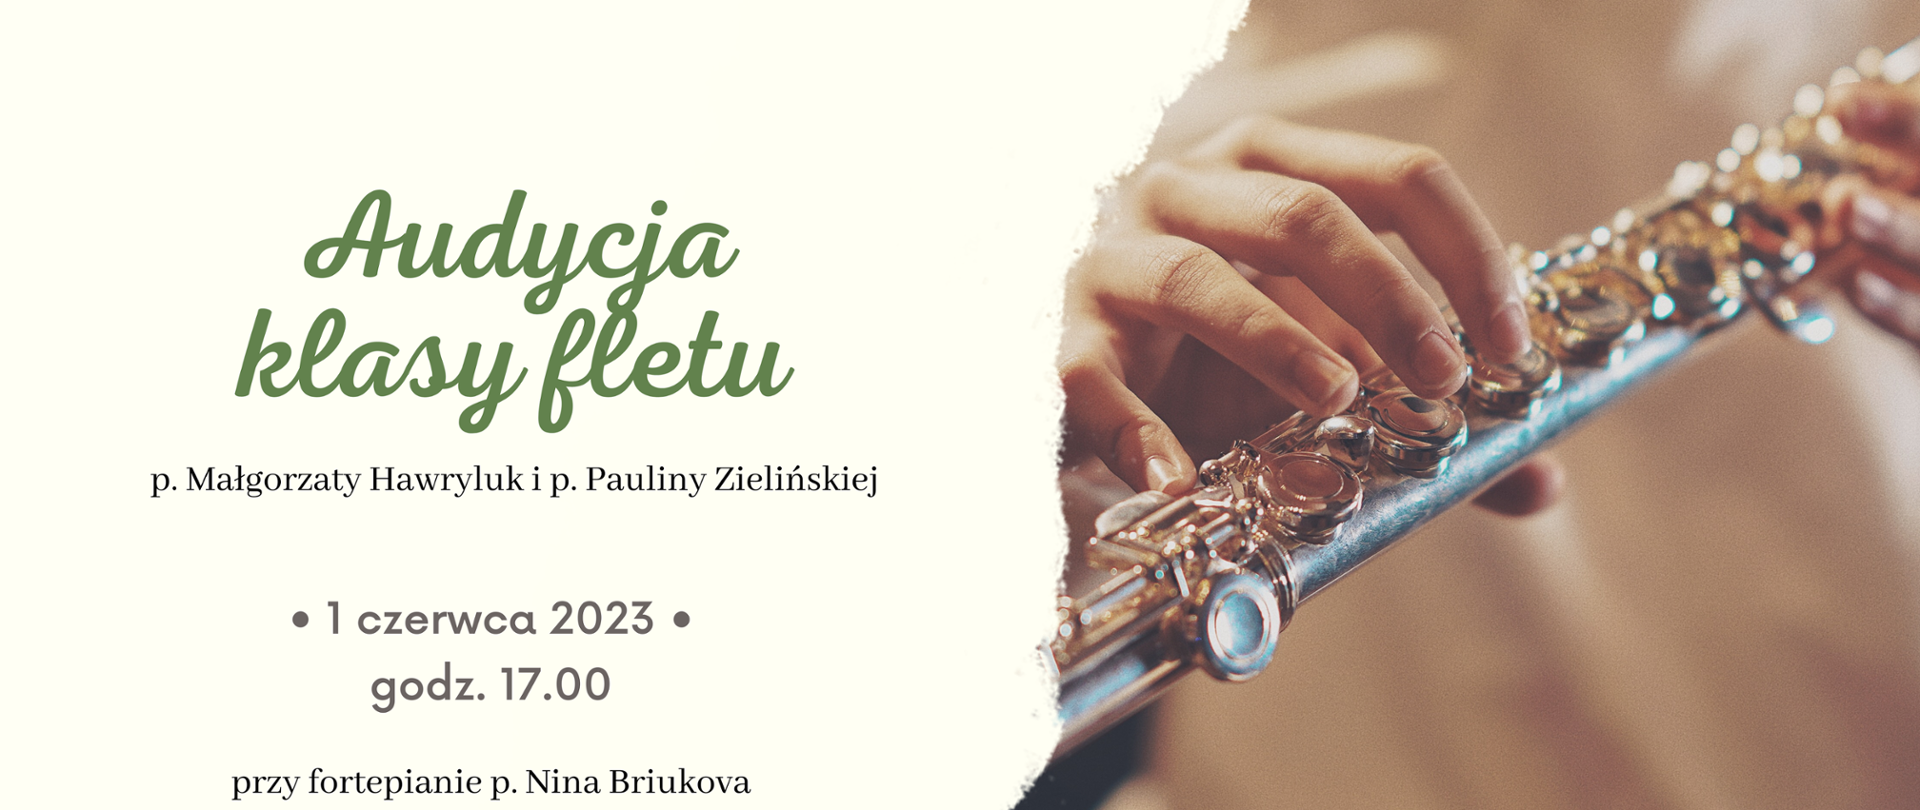 Audycja klasy fletu PSM w Łukowie